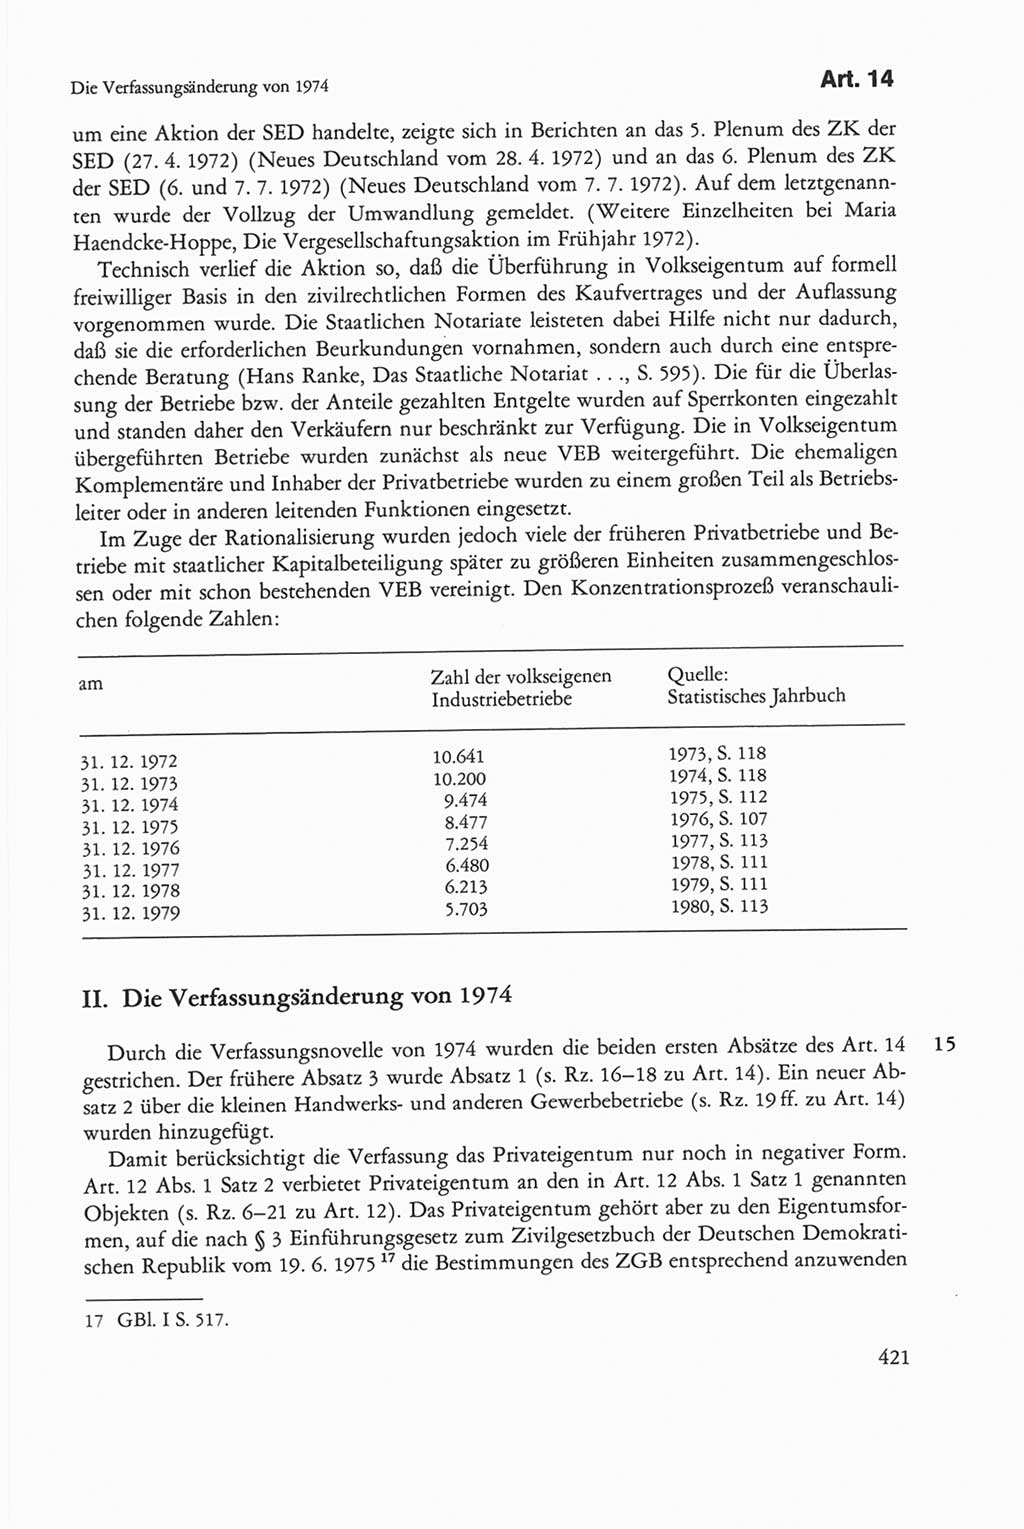 Die sozialistische Verfassung der Deutschen Demokratischen Republik (DDR), Kommentar 1982, Seite 421 (Soz. Verf. DDR Komm. 1982, S. 421)